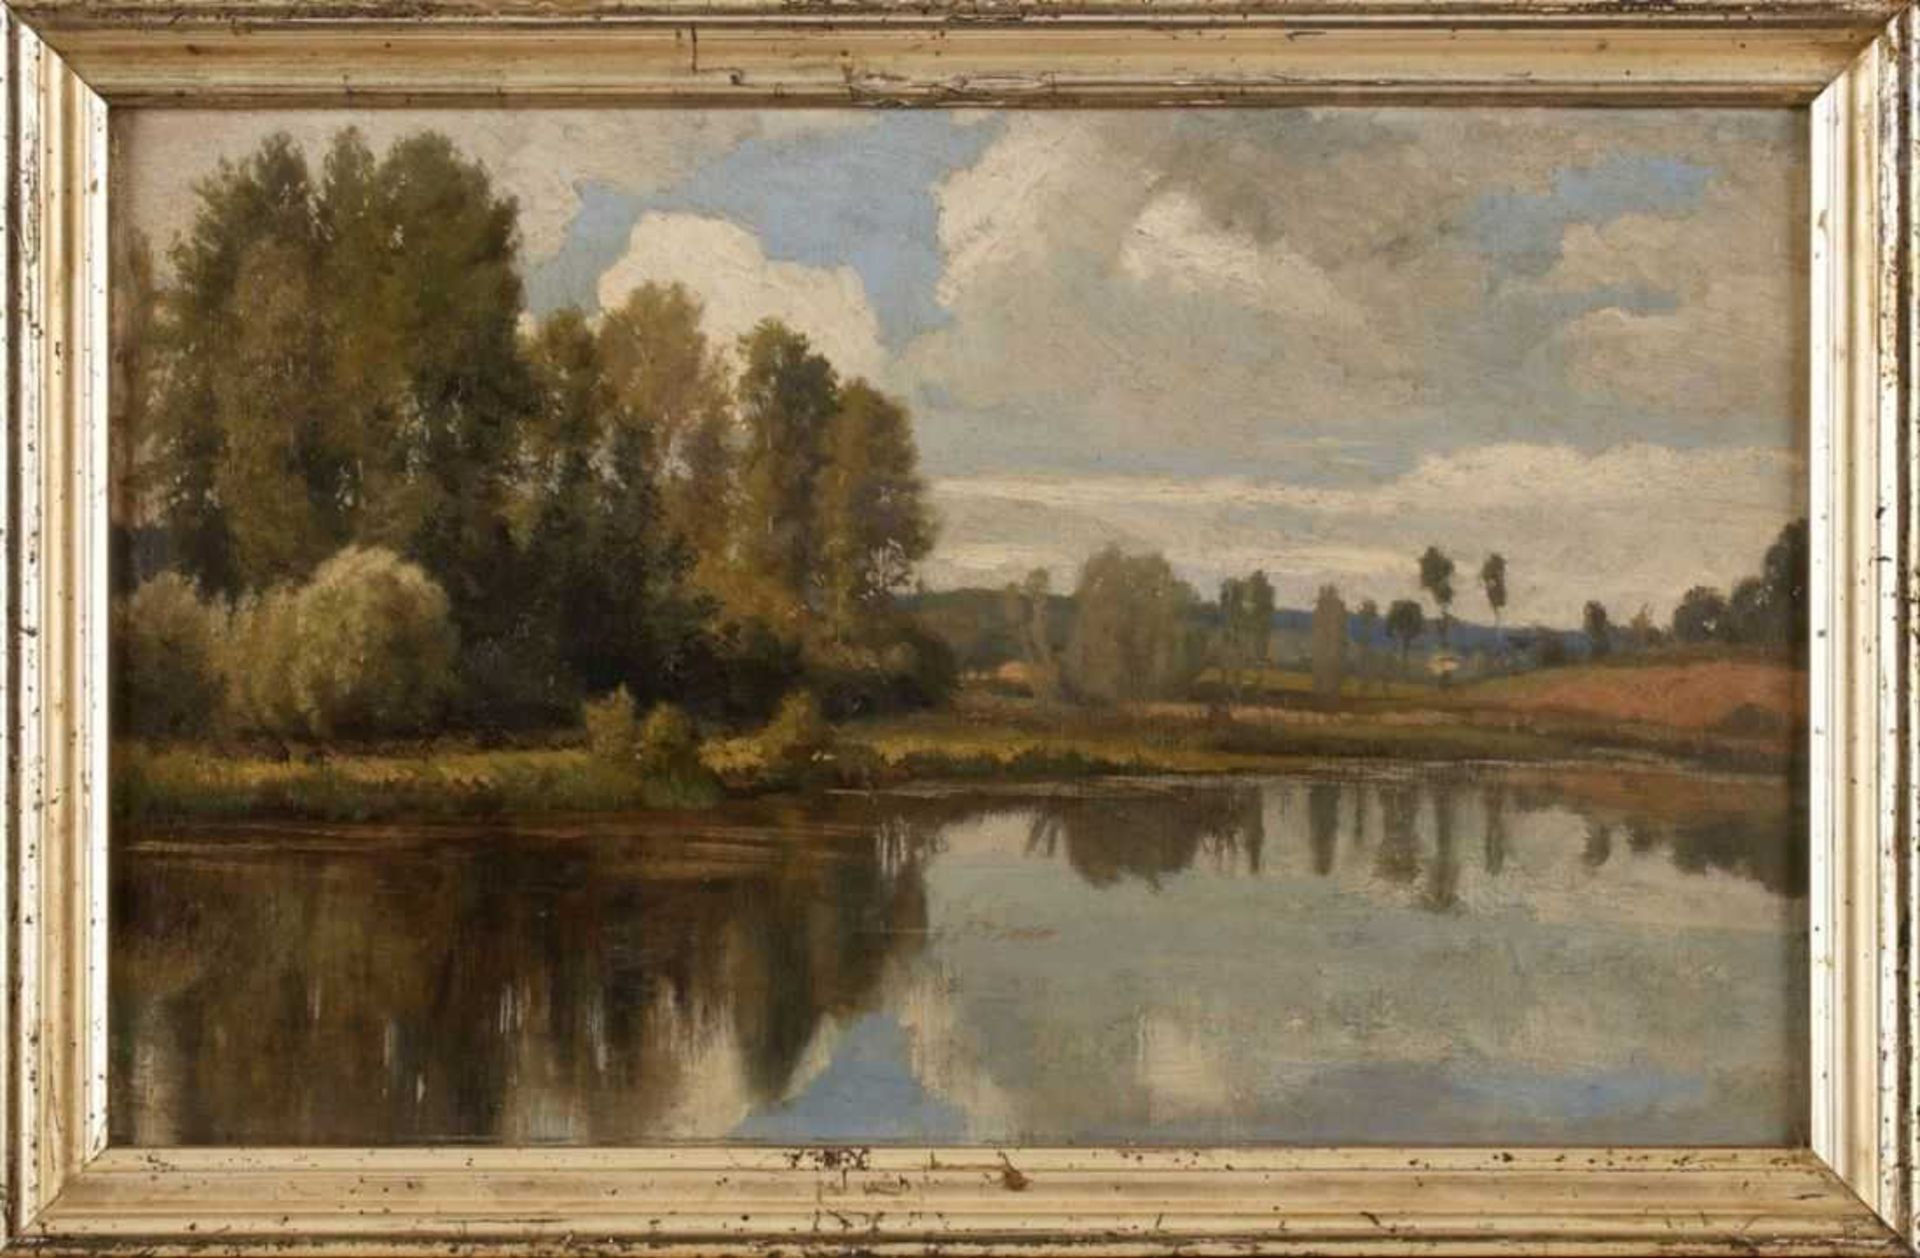 Gemälde Peter Burnitz1824 Frankfurt - 1886 Frankfurt "Sommerliche Landschaft am Wasser" verso mit